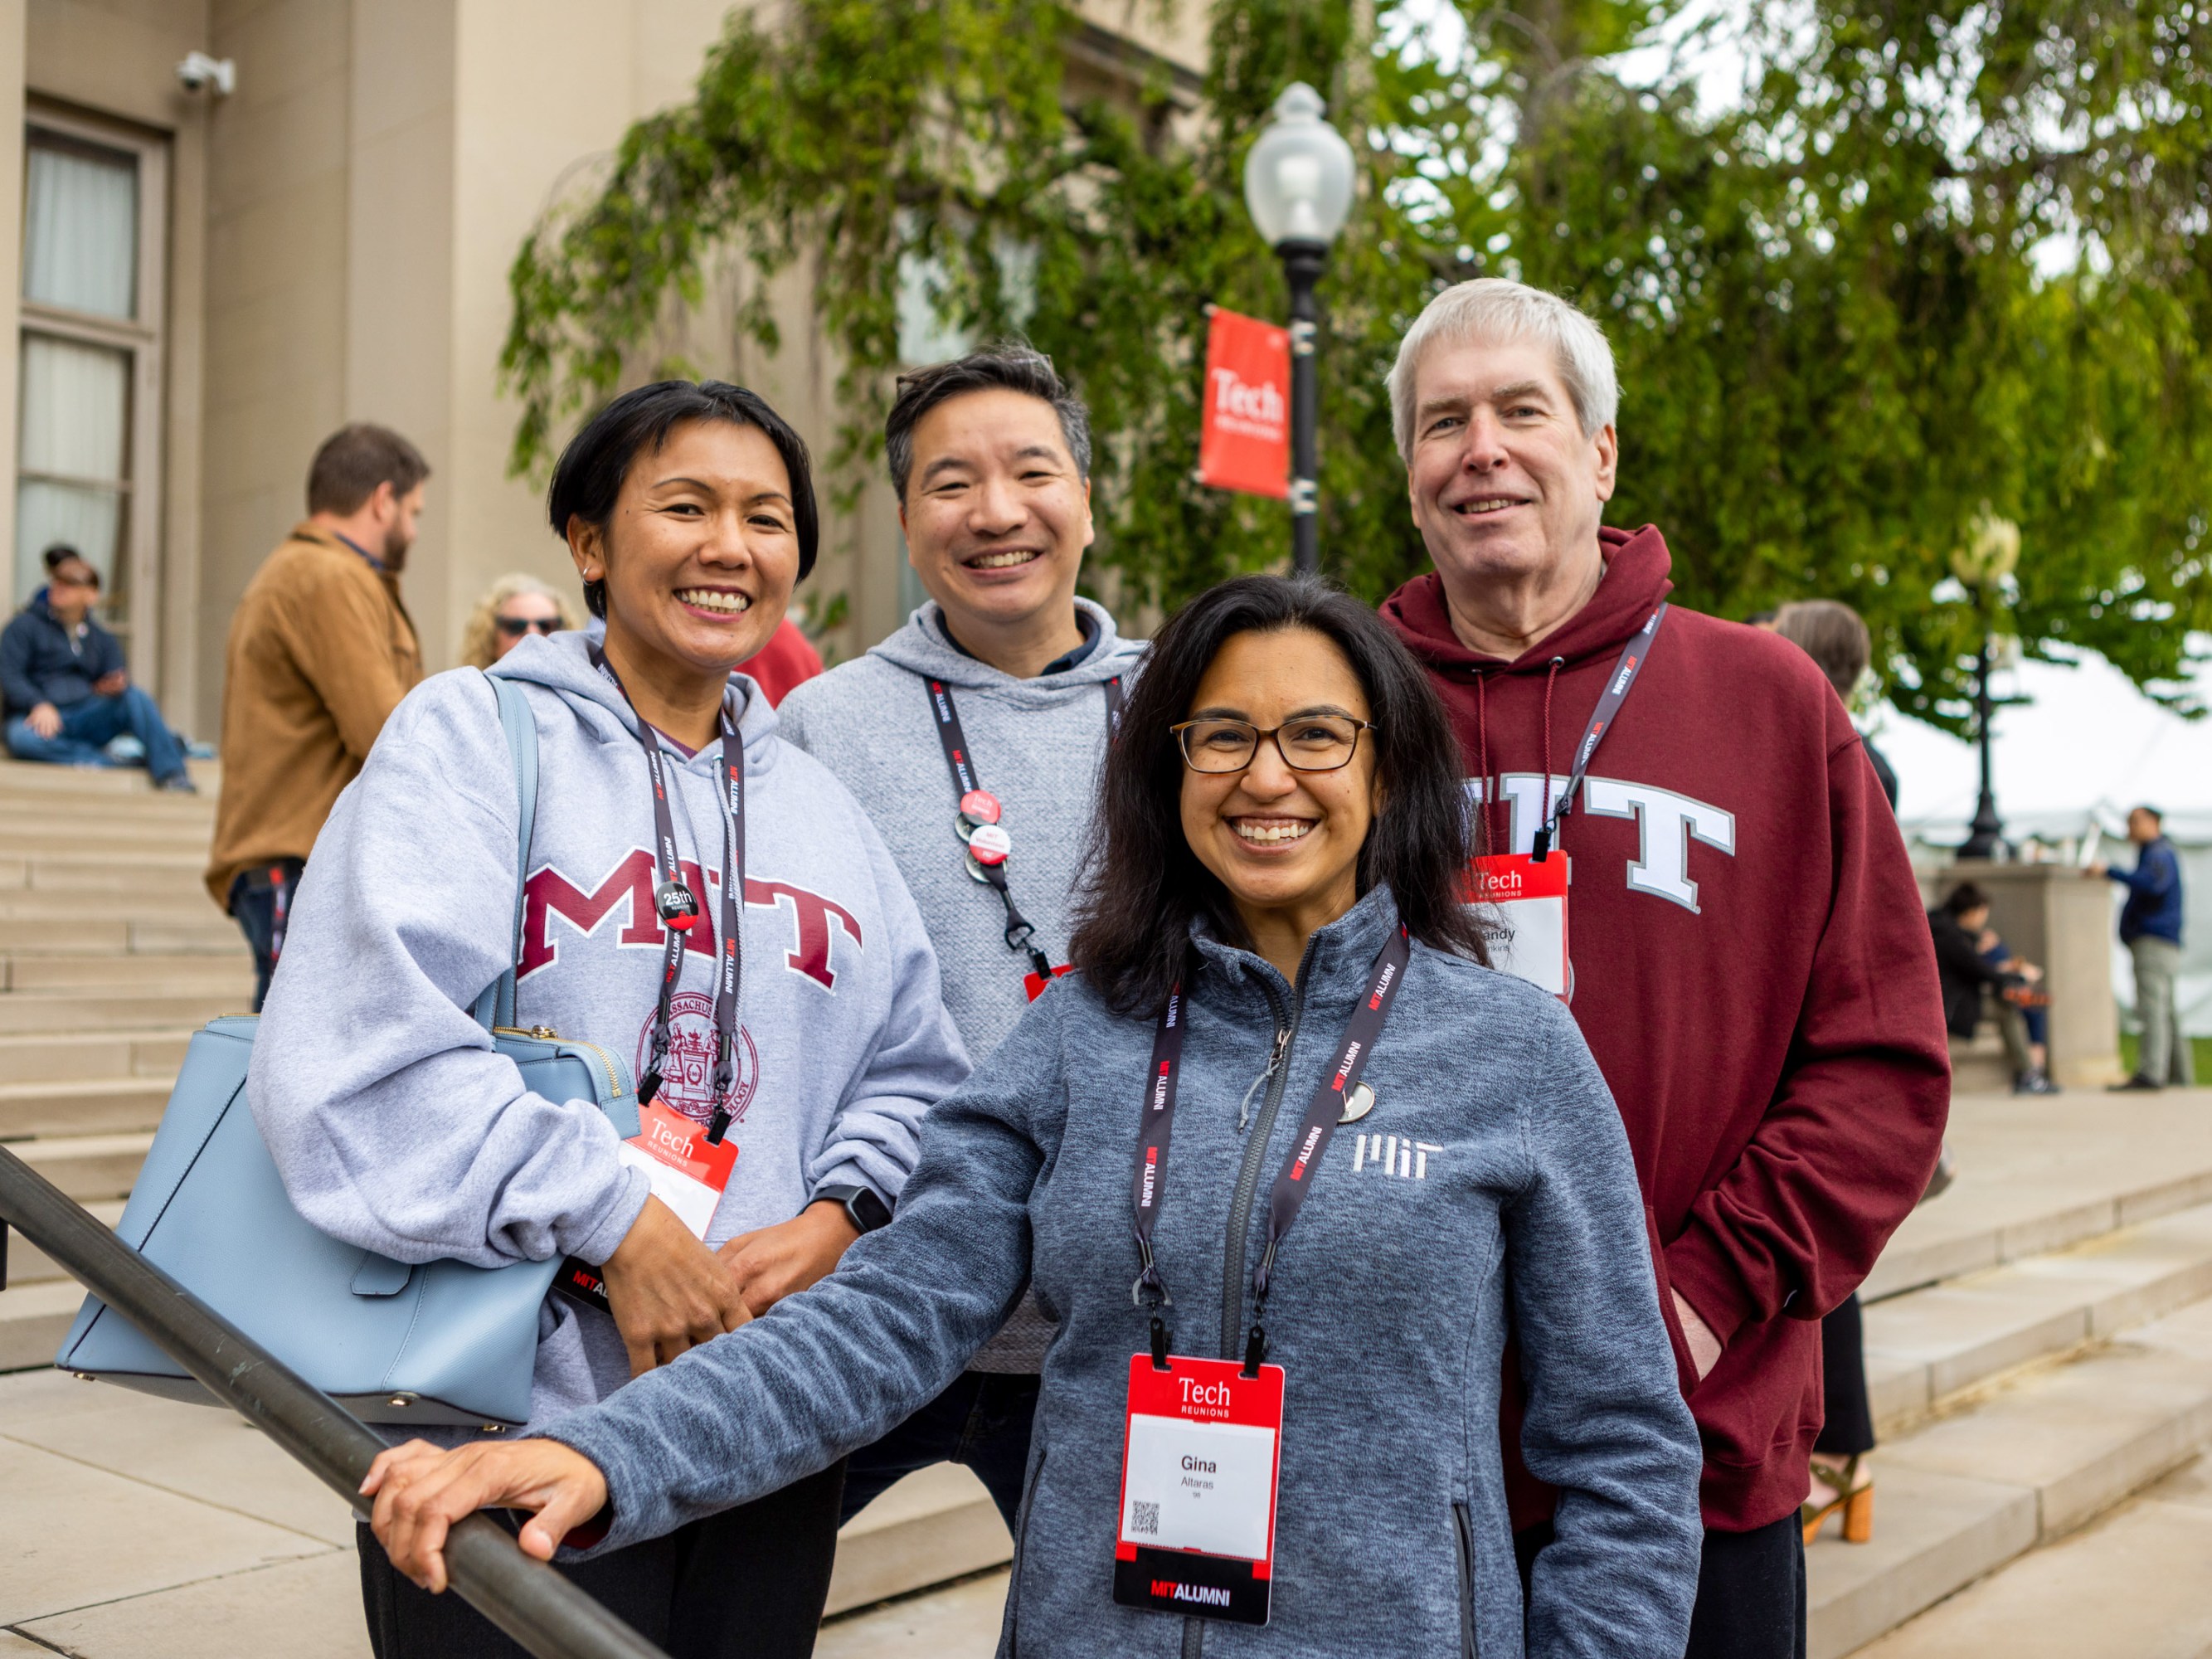 Four people pose wearing MIT sweatshirts